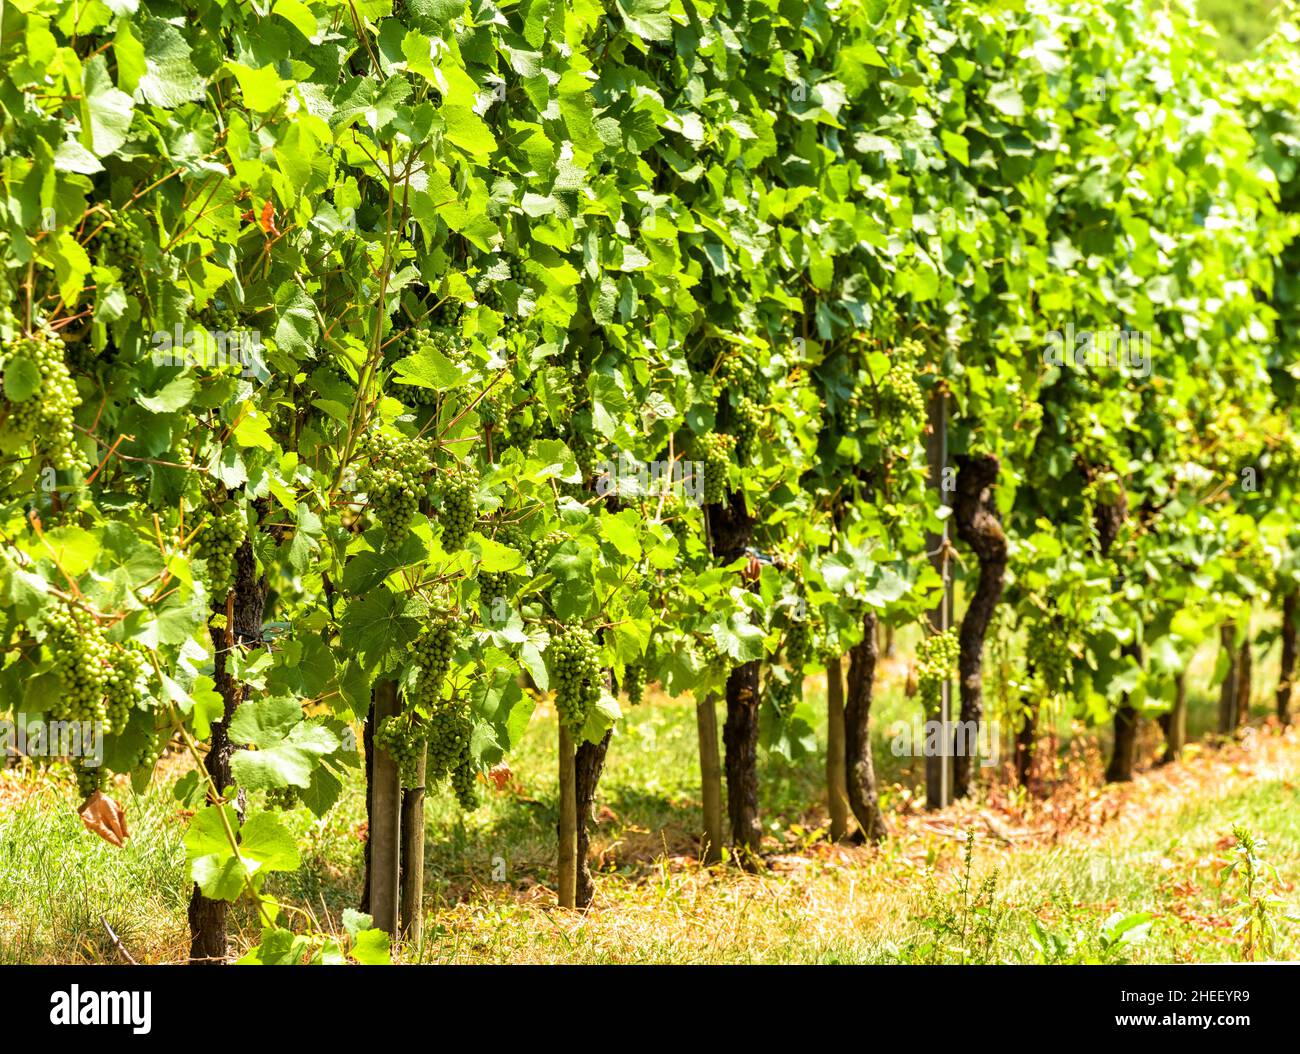 Arrière-plan des vignes, plantation de vignes vertes en été.Vue panoramique sur les plantes de vigne.Concept de viticulture, cave de vinification, vinification, cave de vinification et t Banque D'Images